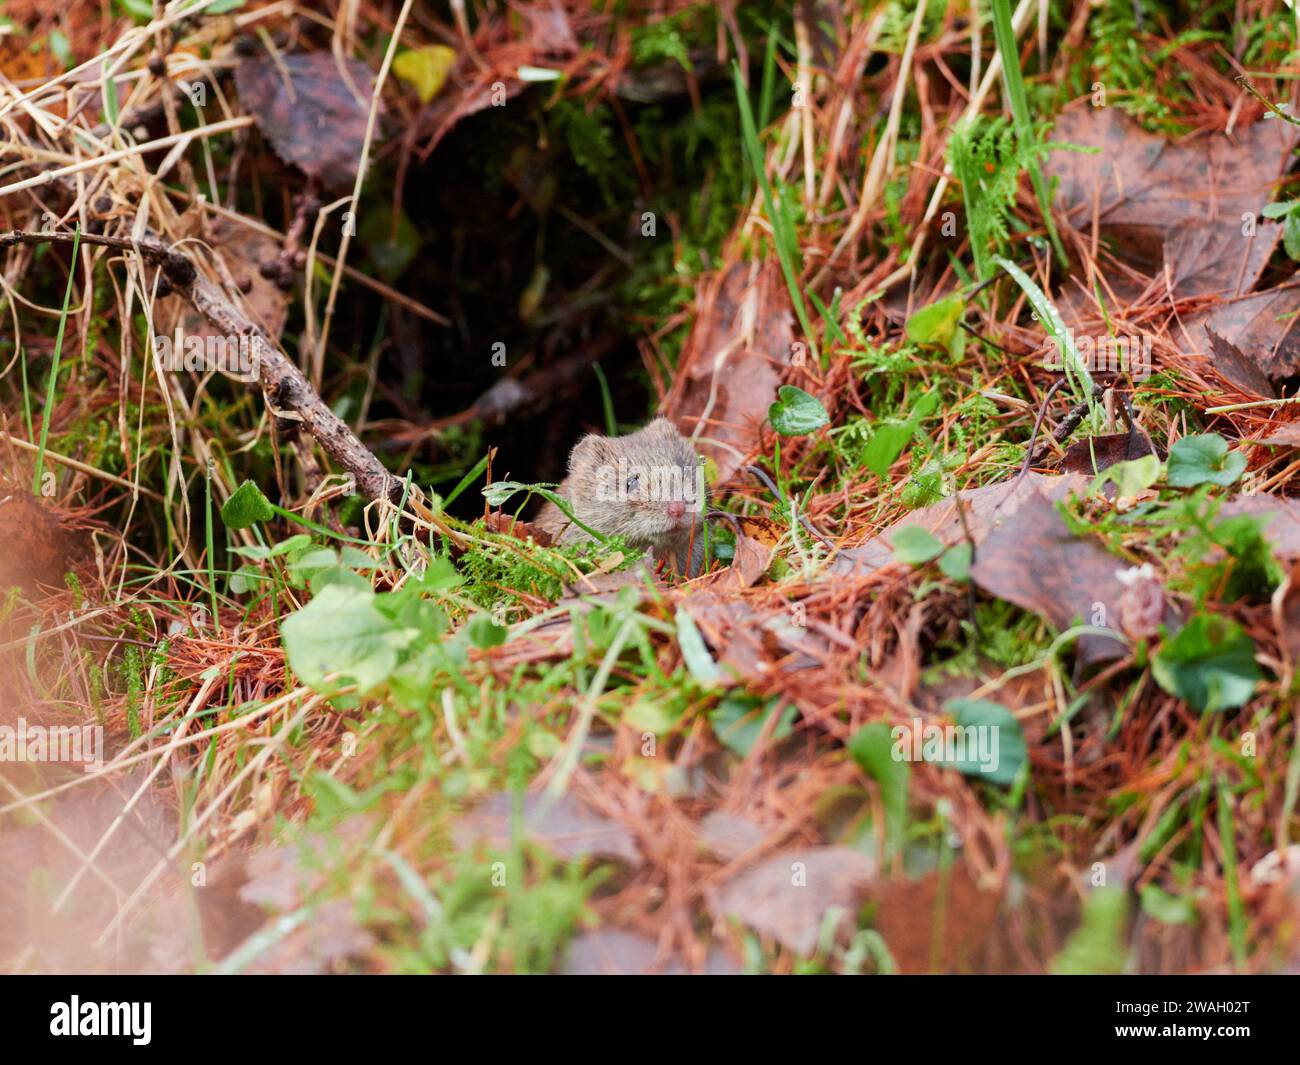 Campagnol roussâtre (Myodes glareolus) dans la forêt, les Highlands écossais, Royaume-Uni Banque D'Images